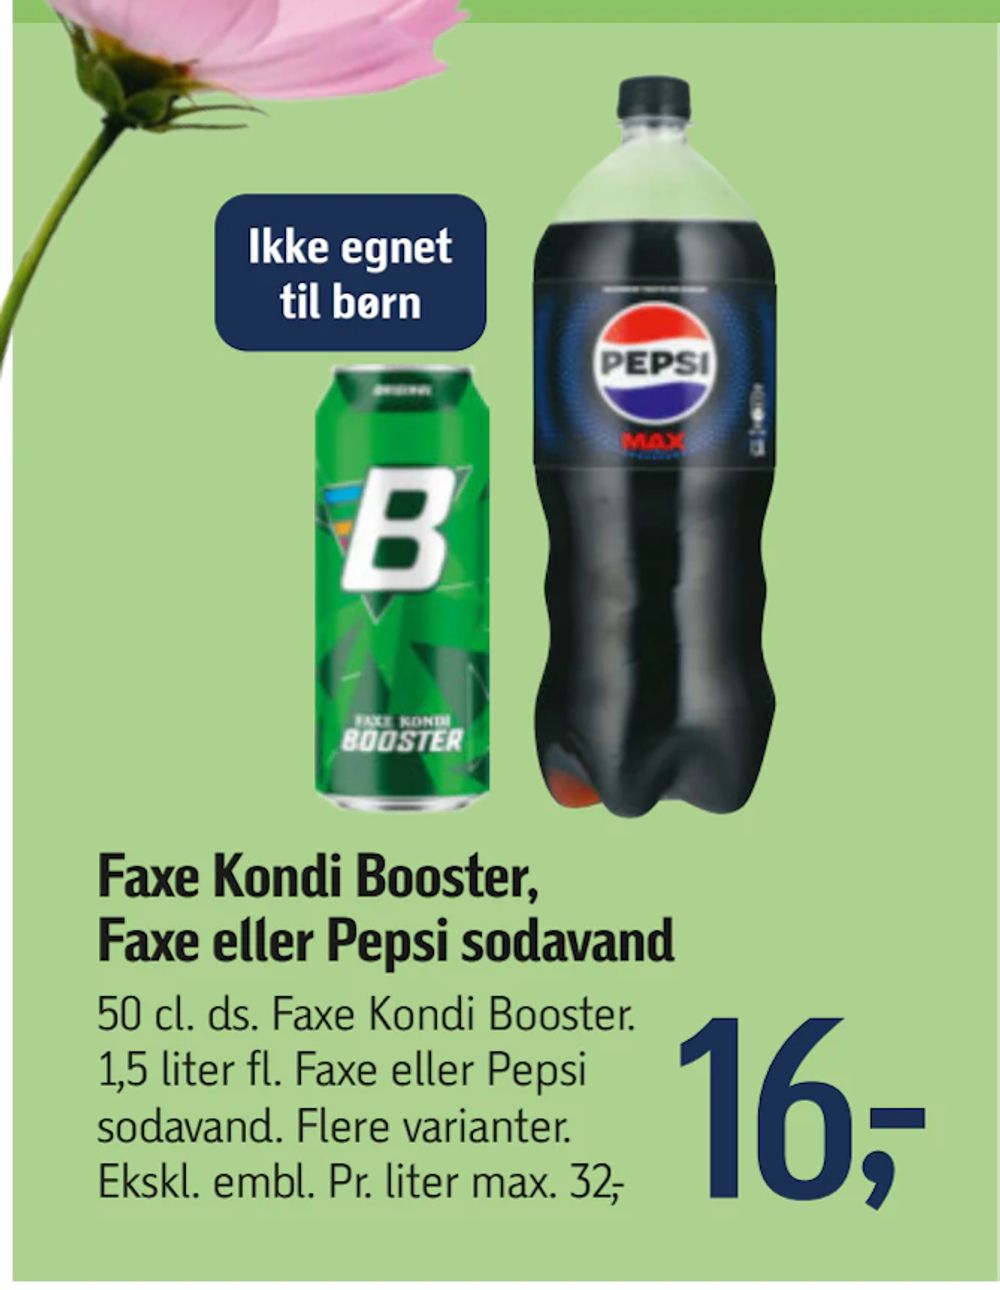 Tilbud på Faxe Kondi Booster, Faxe eller Pepsi sodavand fra føtex til 16 kr.